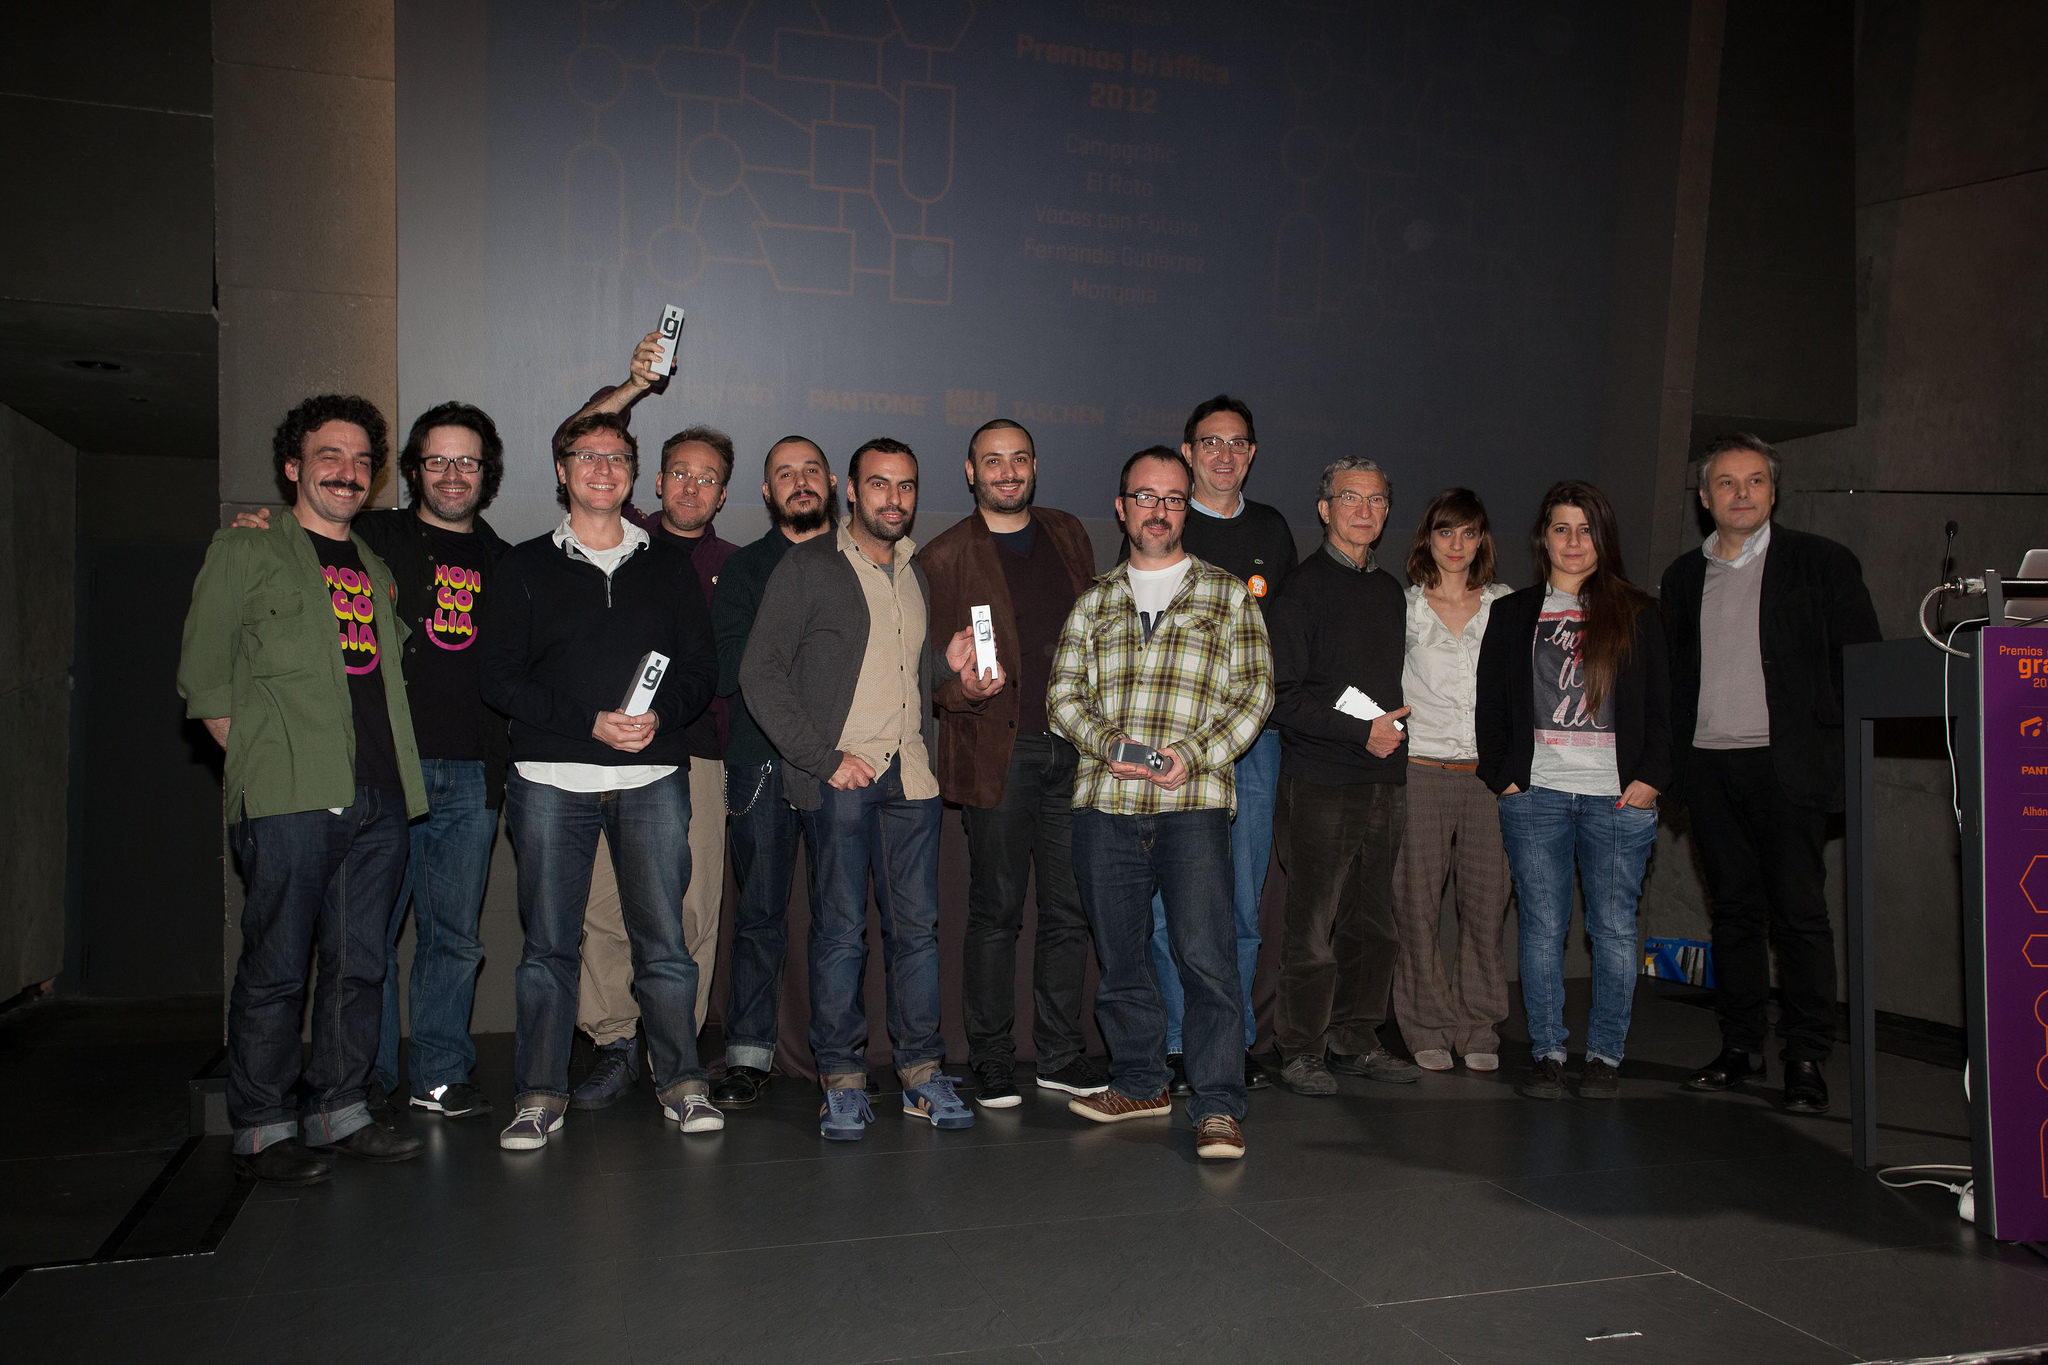 10 premiados con el trofeo en los Premios Gràffica 2012 Bilbao